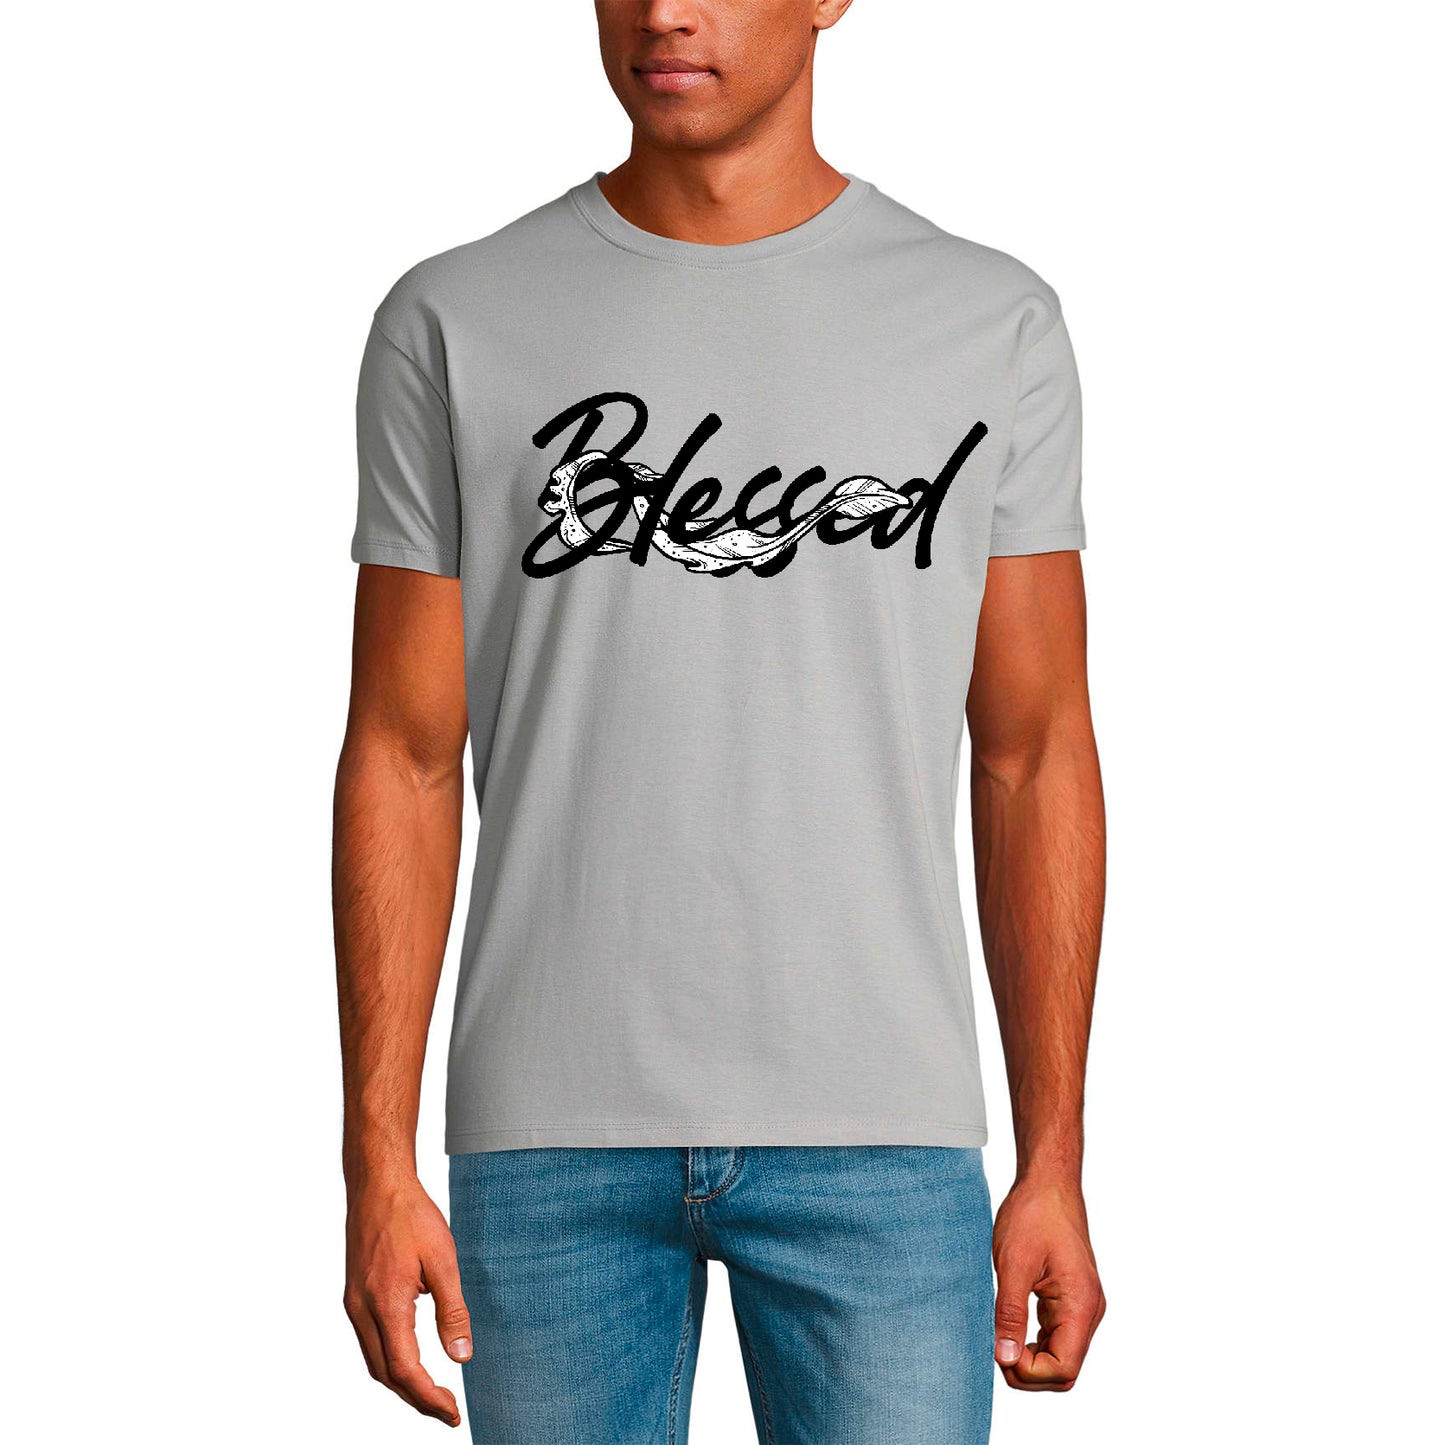 ULTRABASIC Men's T-Shirt Blessed - Bible Christian Religious Shirt